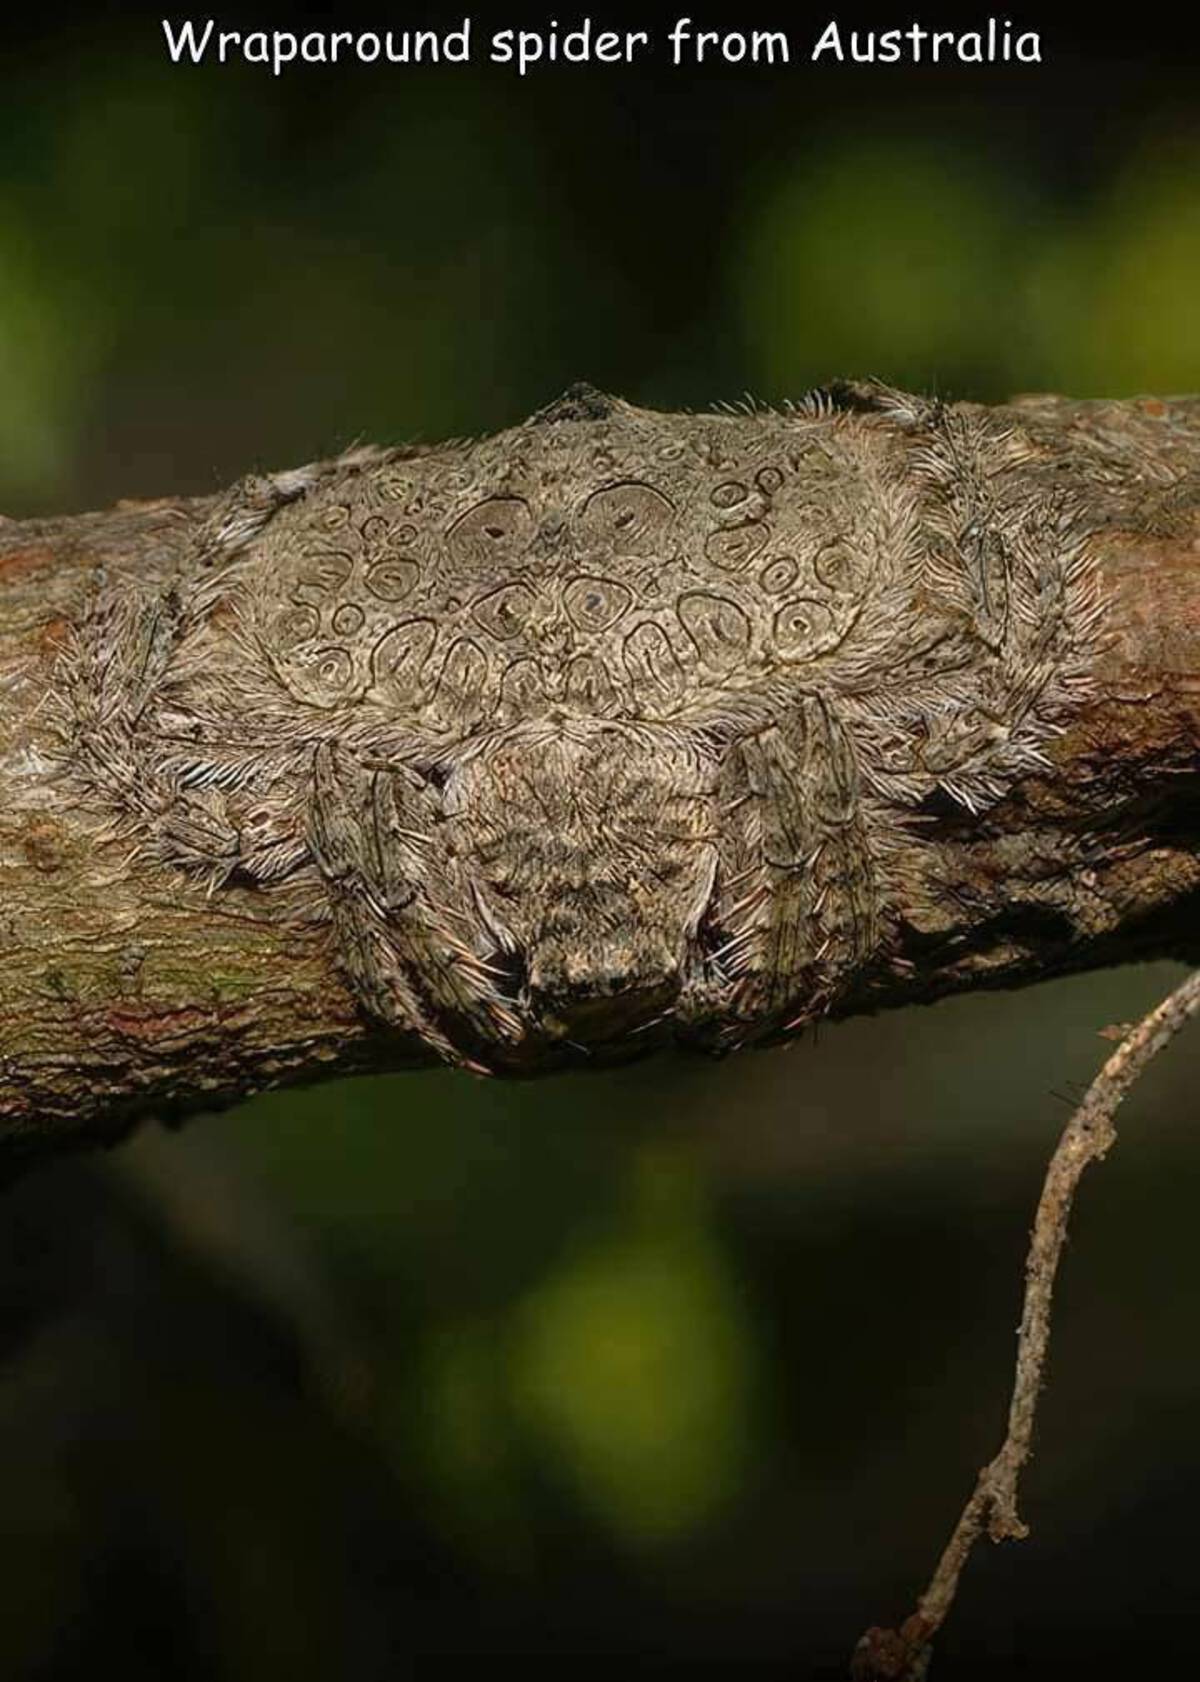 spider camouflage on tree - Wraparound spider from Australia